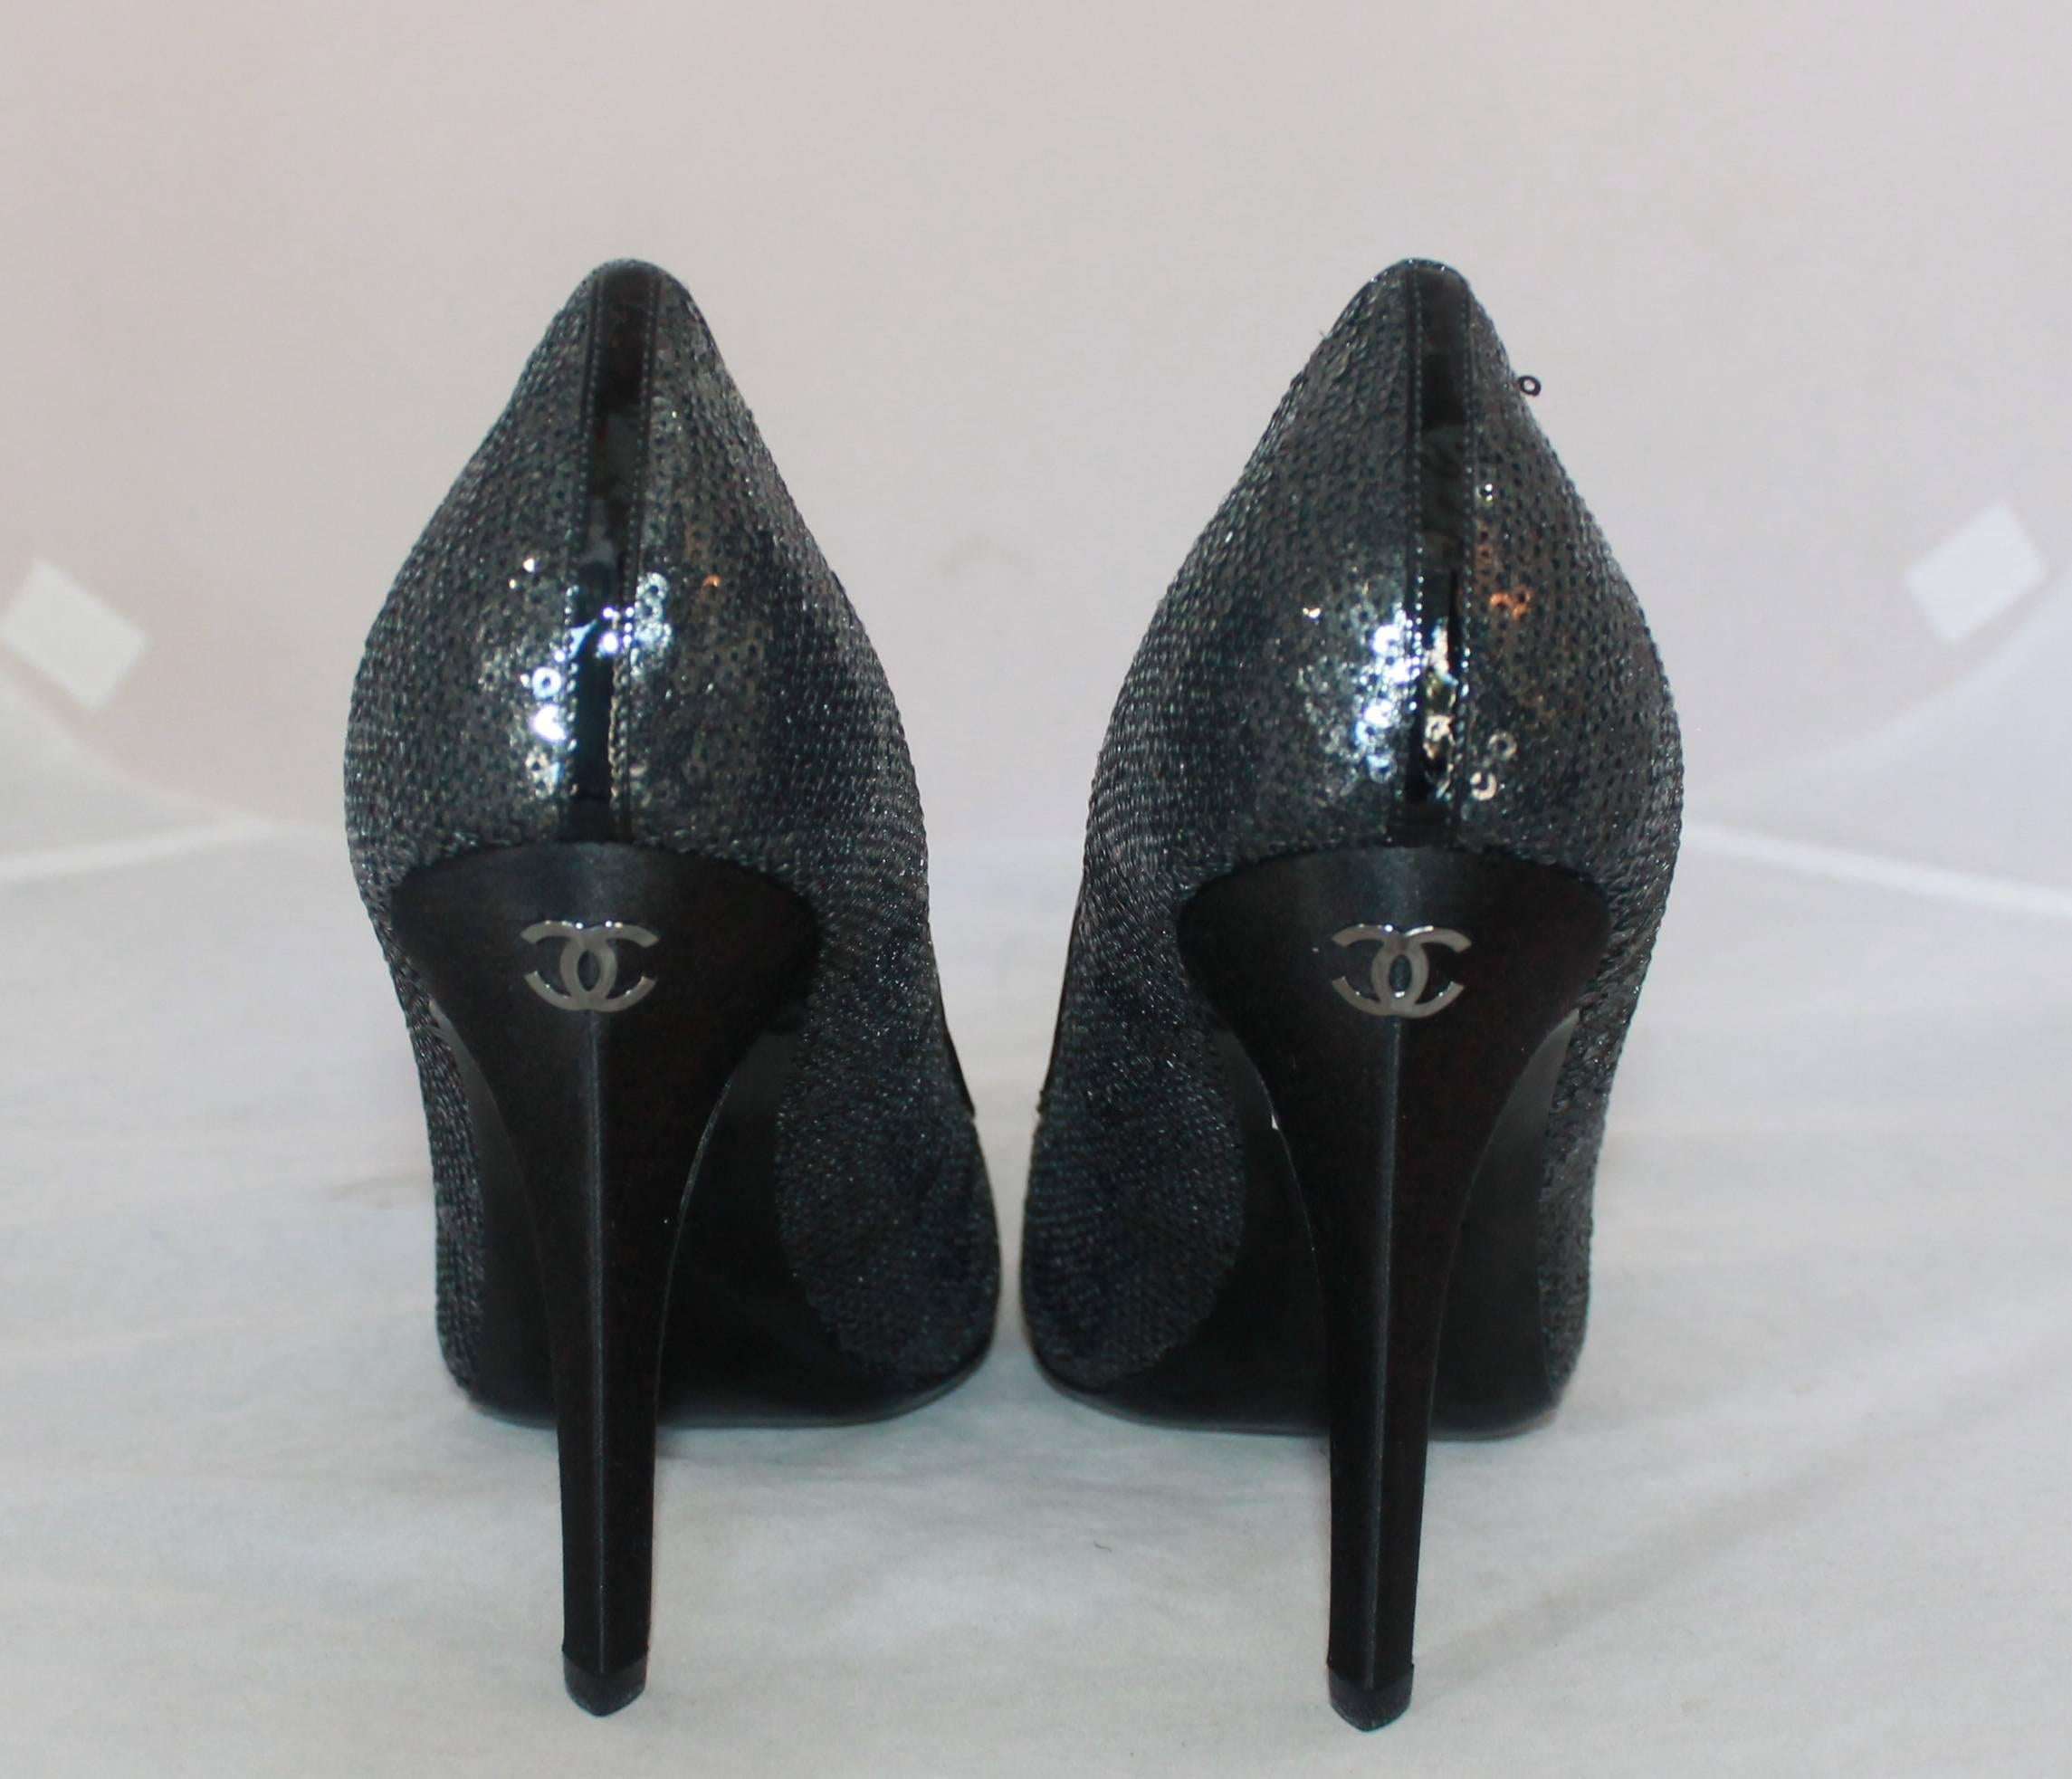 black sequin heels